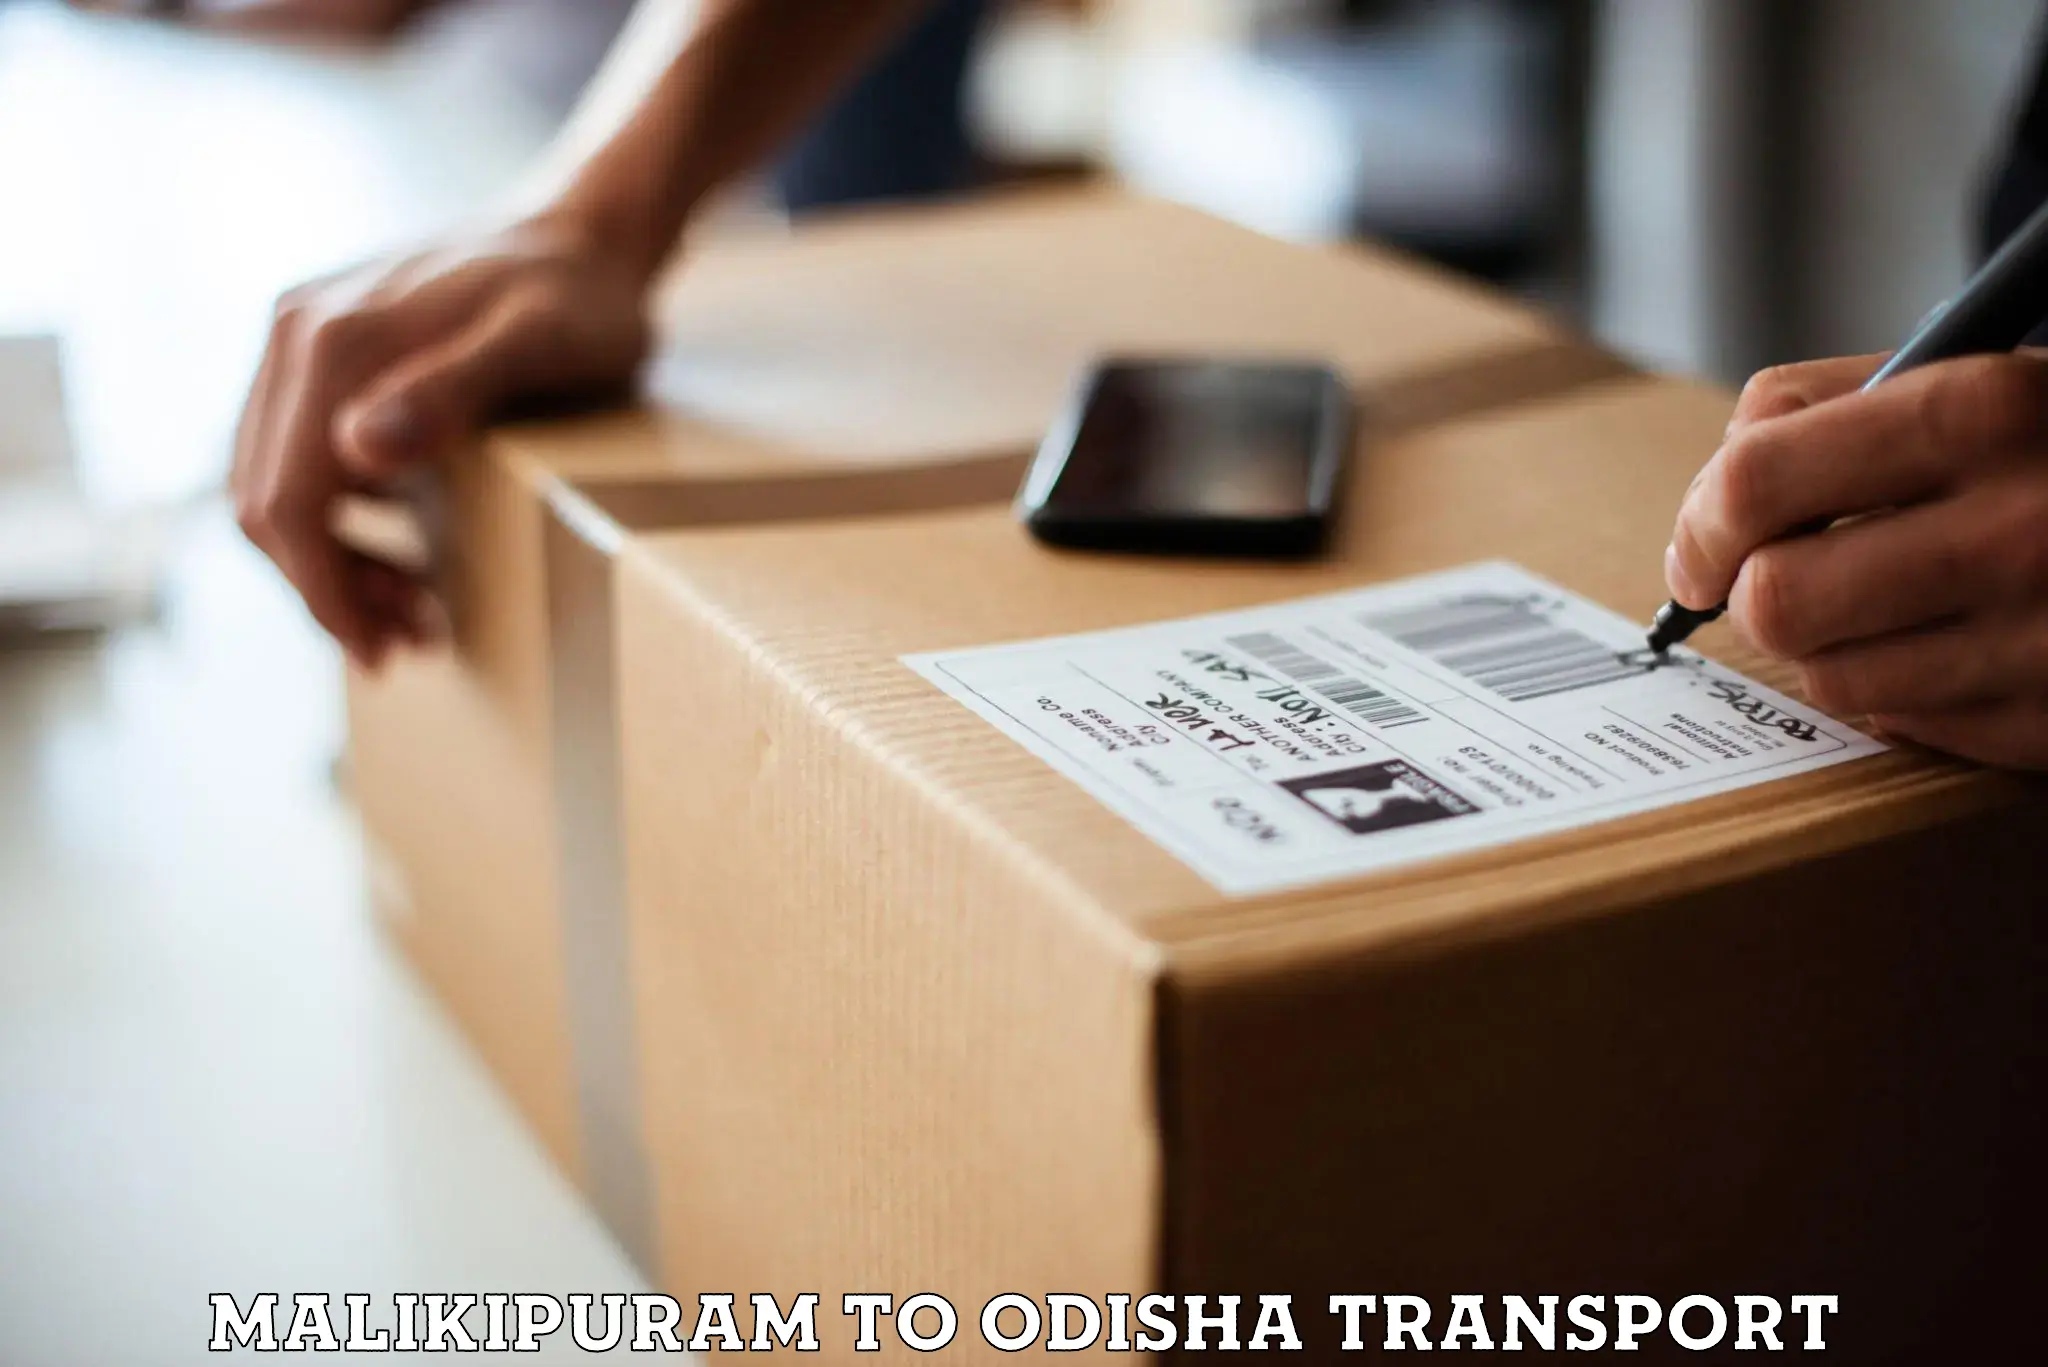 Furniture transport service Malikipuram to Garjanpur